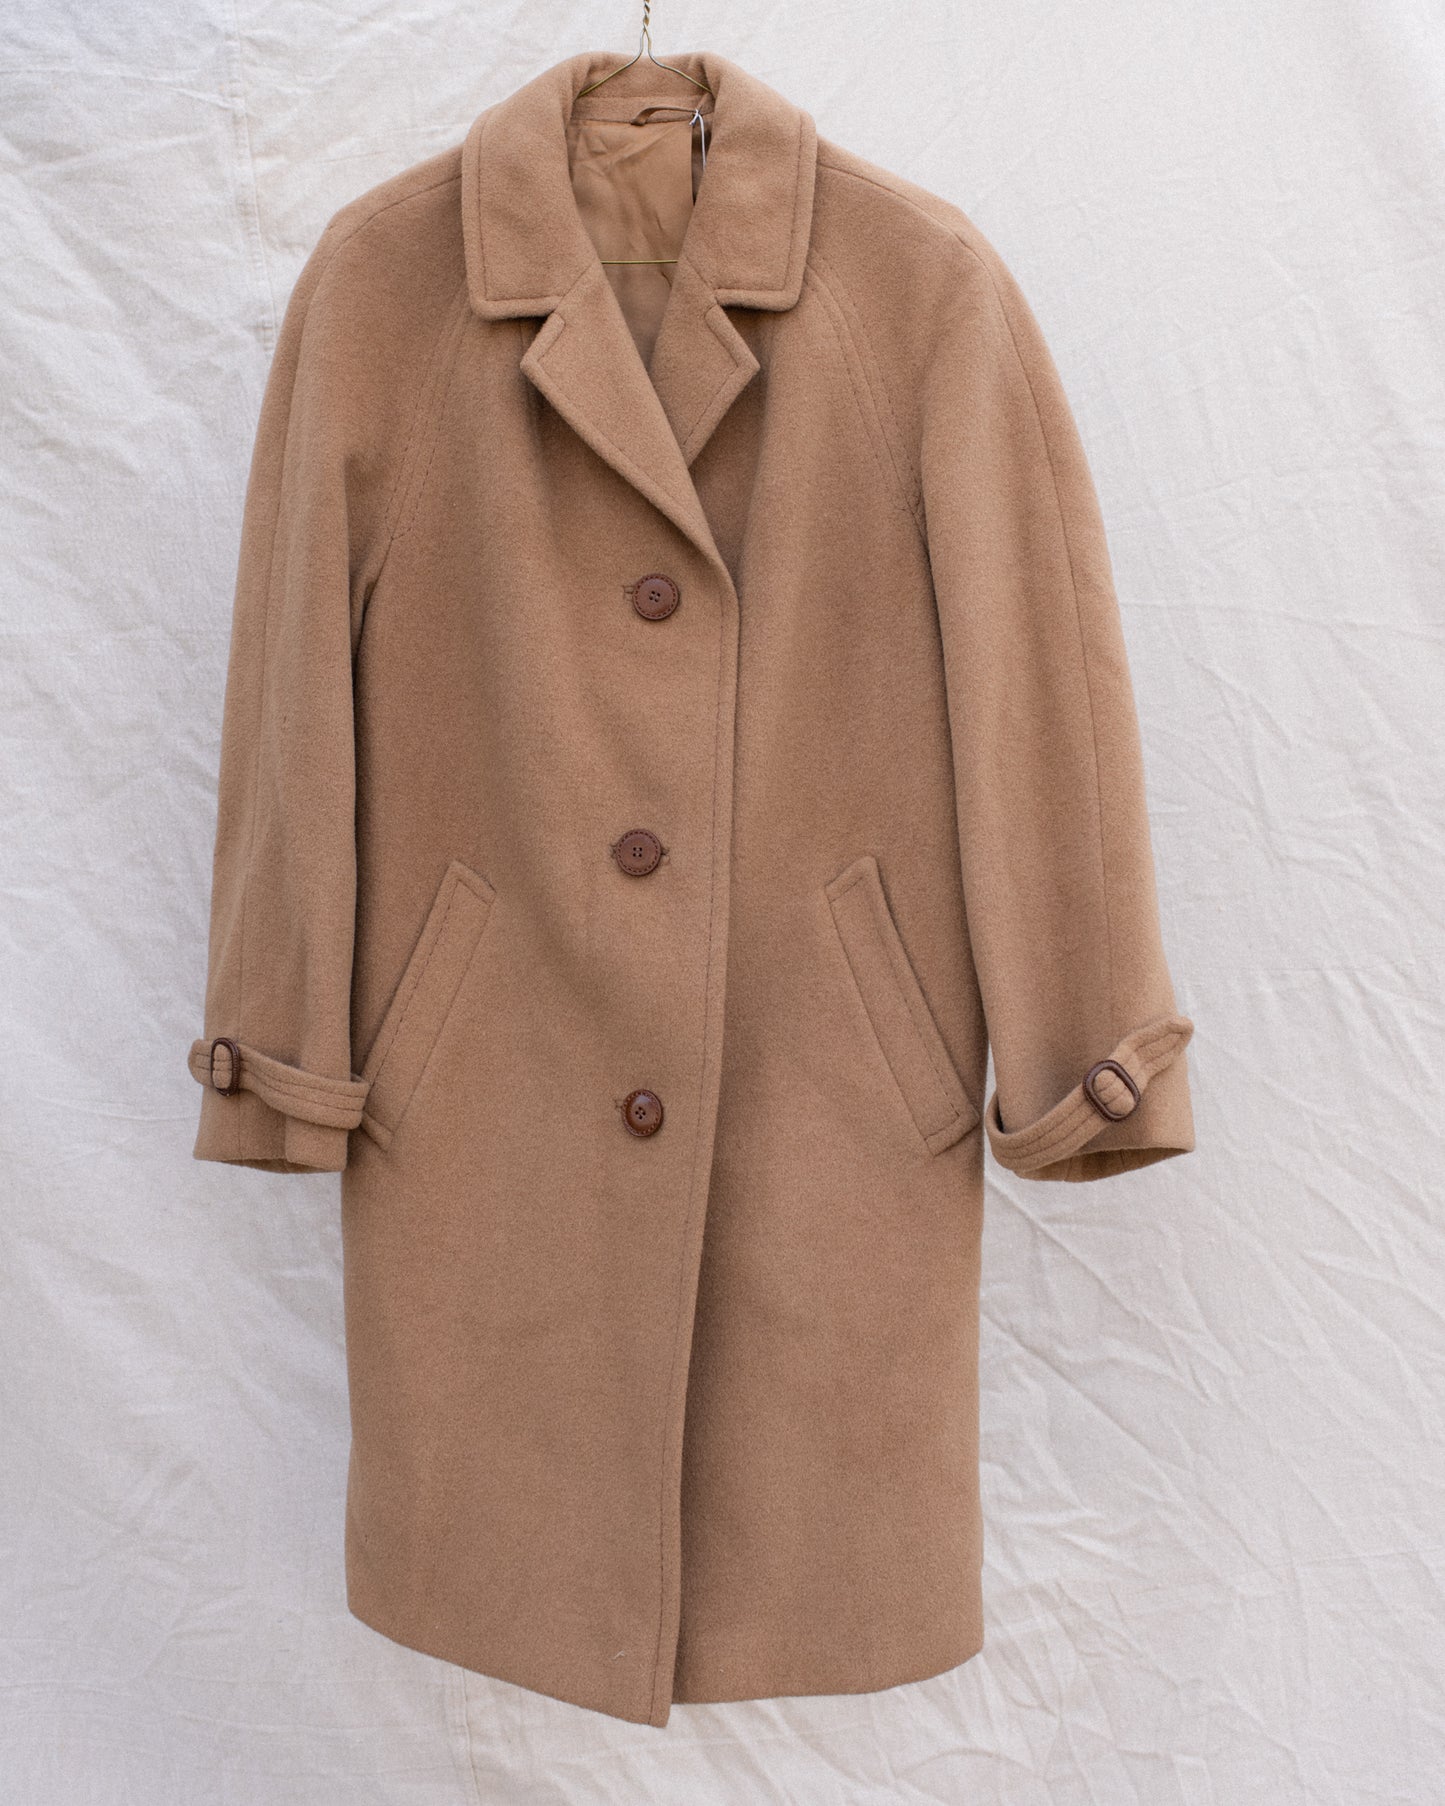 Vintage Camel BERLIN Coat #2 (XS/S)